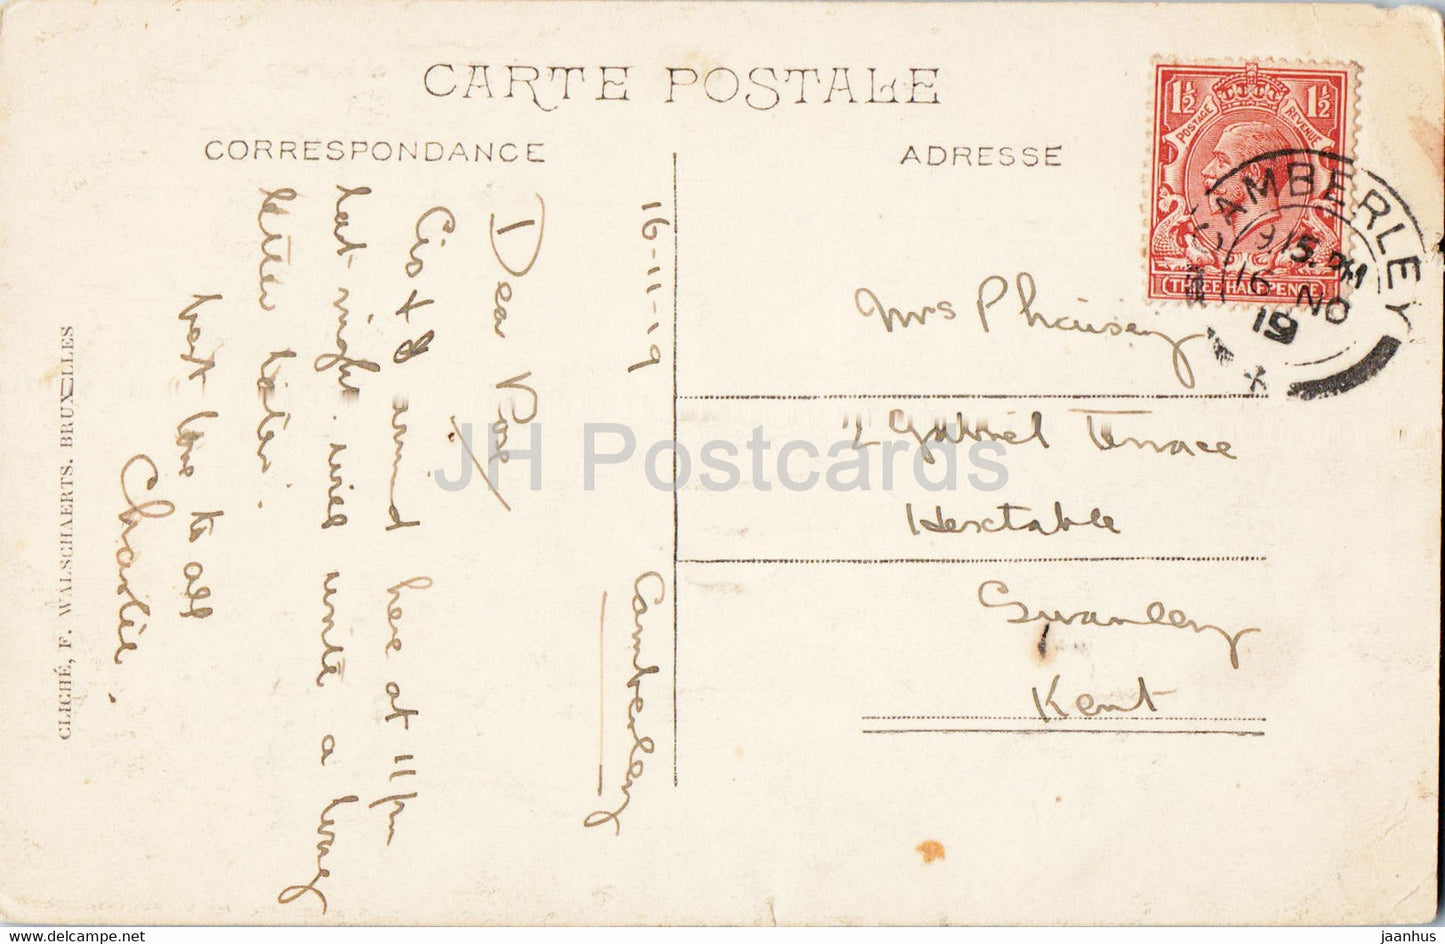 Ostende - Ostende - Le Kursaal et la Plage - plage - 84 - carte postale ancienne - 1919 - Belgique - utilisé